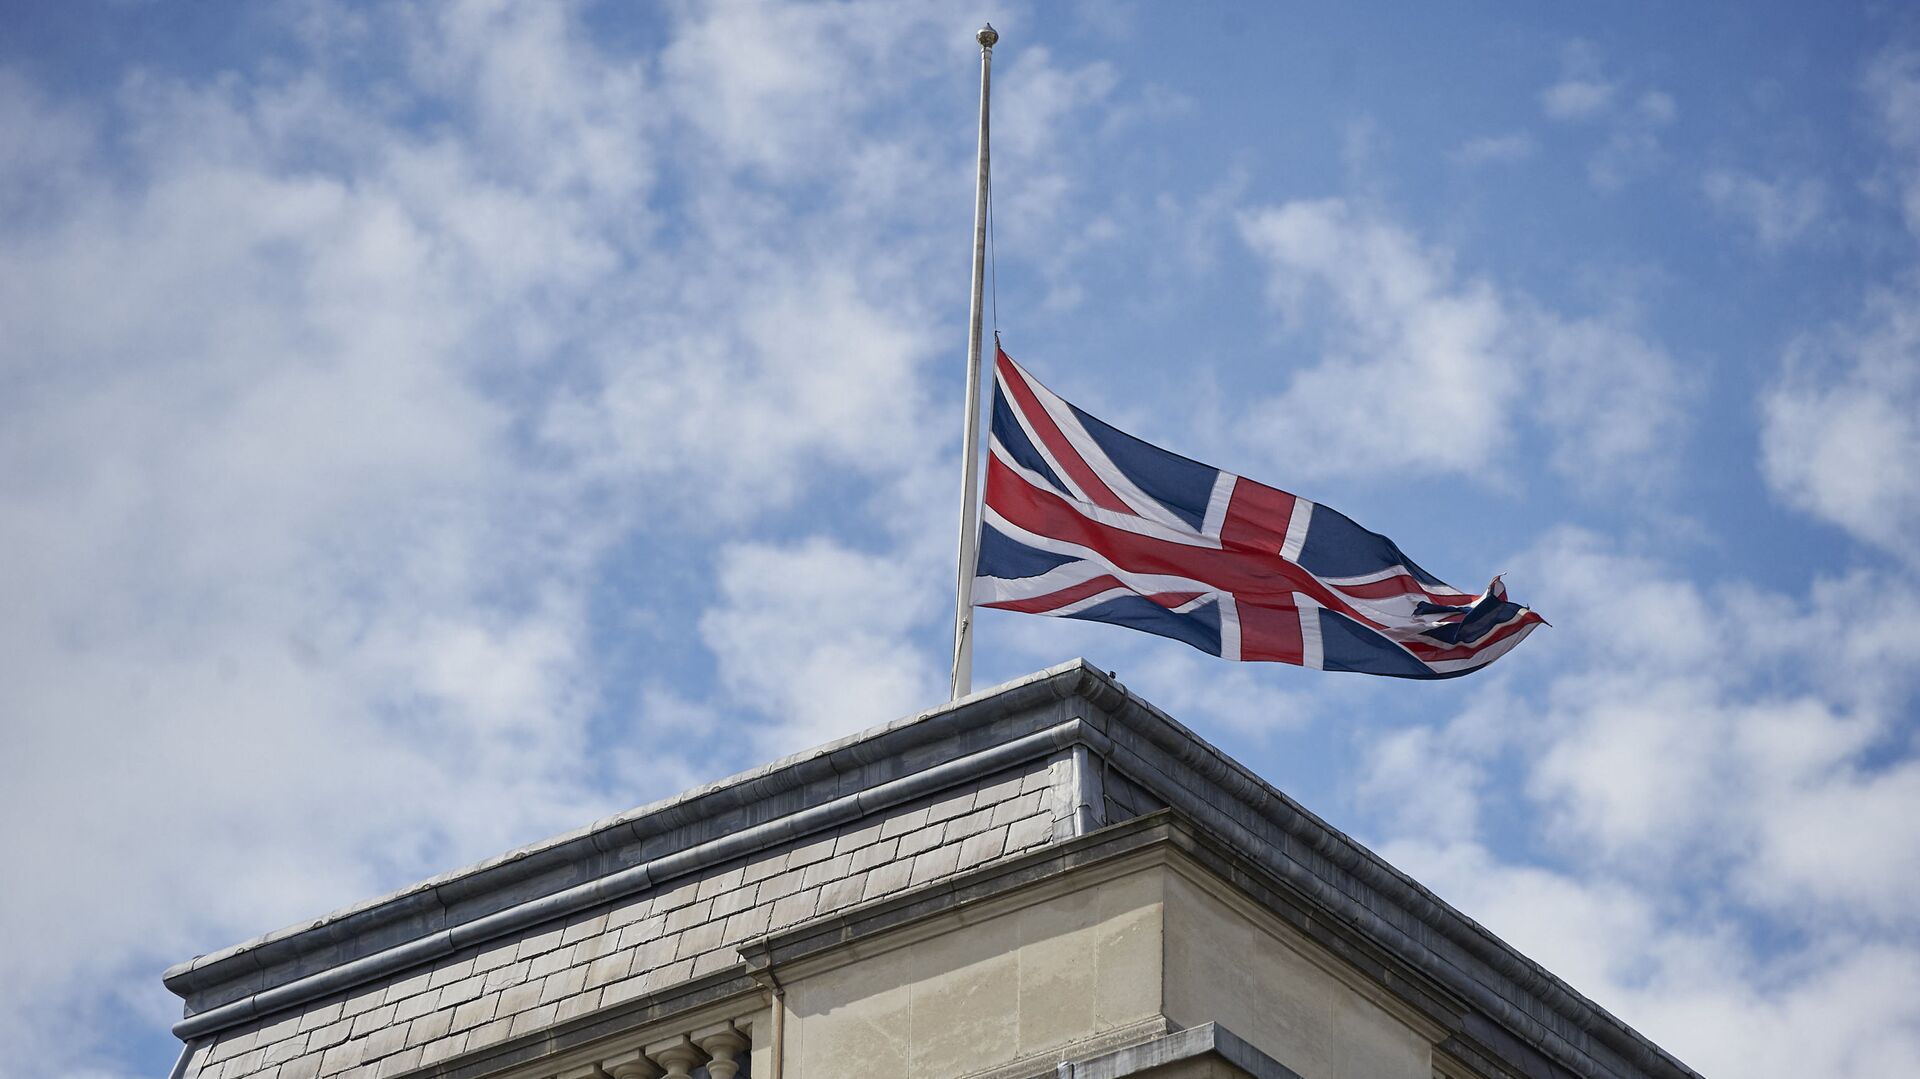 Quốc kỳ Anh trên tòa nhà Bộ Ngoại giao Anh ở London. - Sputnik Việt Nam, 1920, 16.04.2021